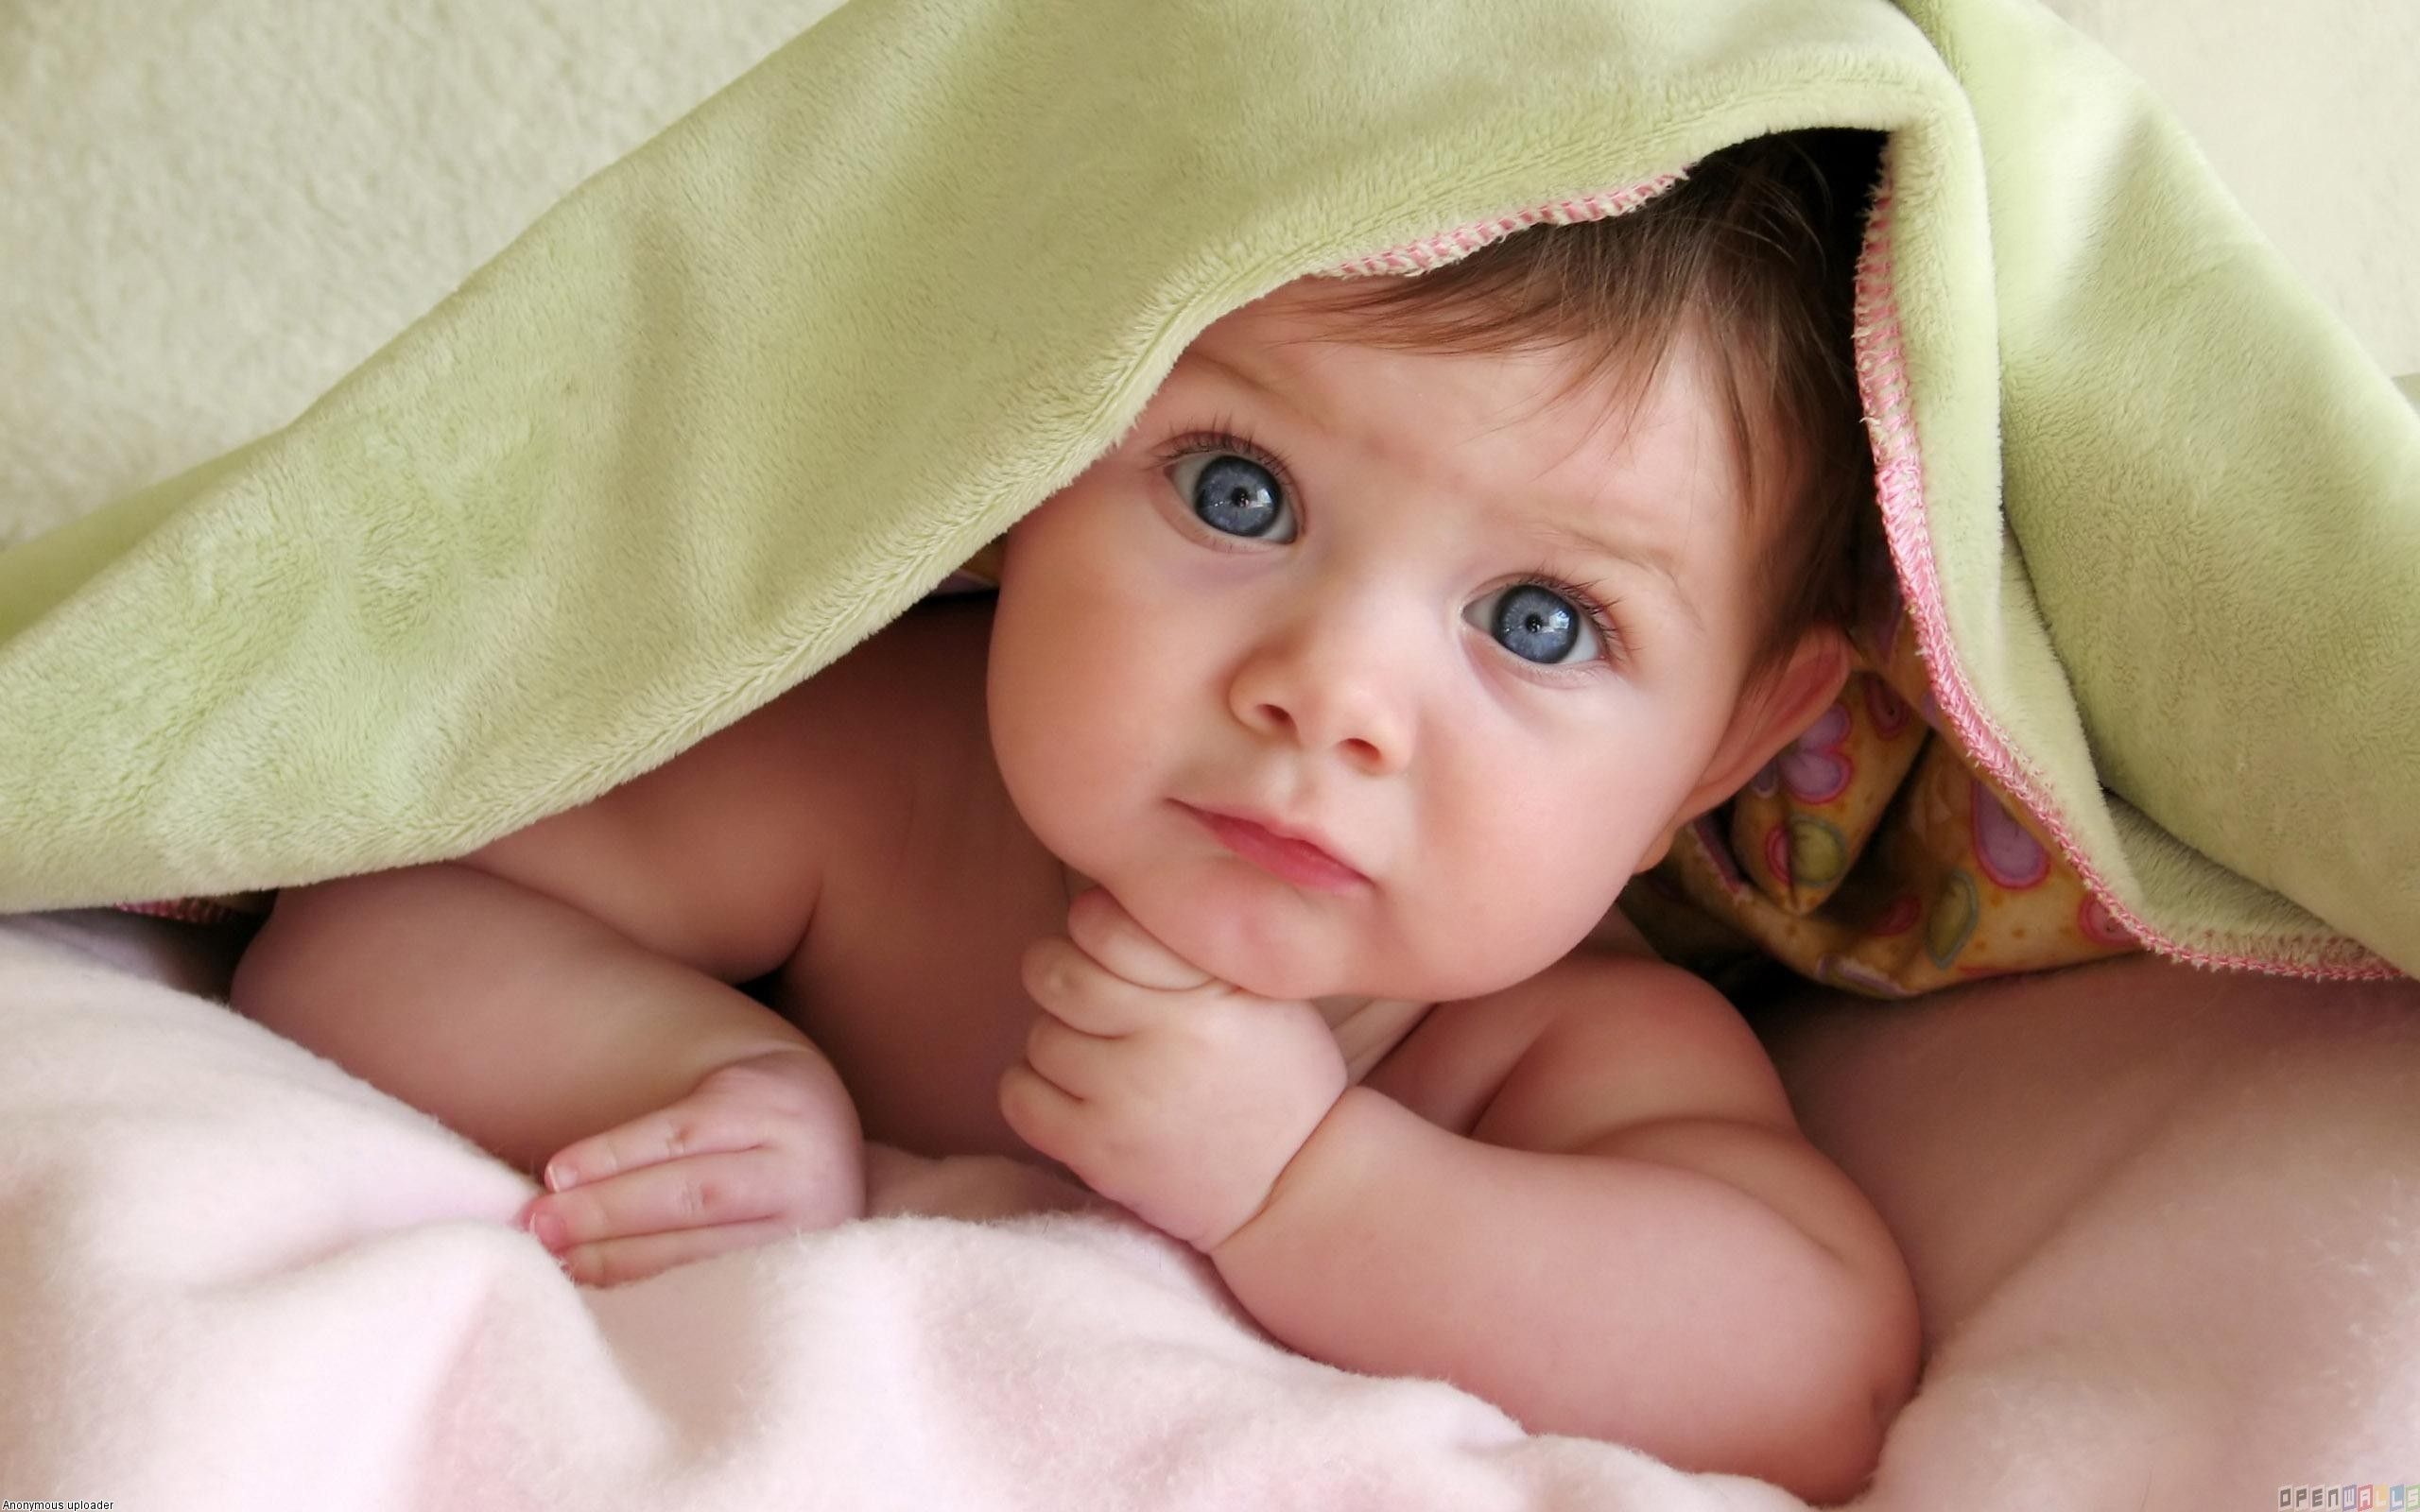 Beautiful Cute Baby (Boy & Girls) HD Wallpapers, Photos Free